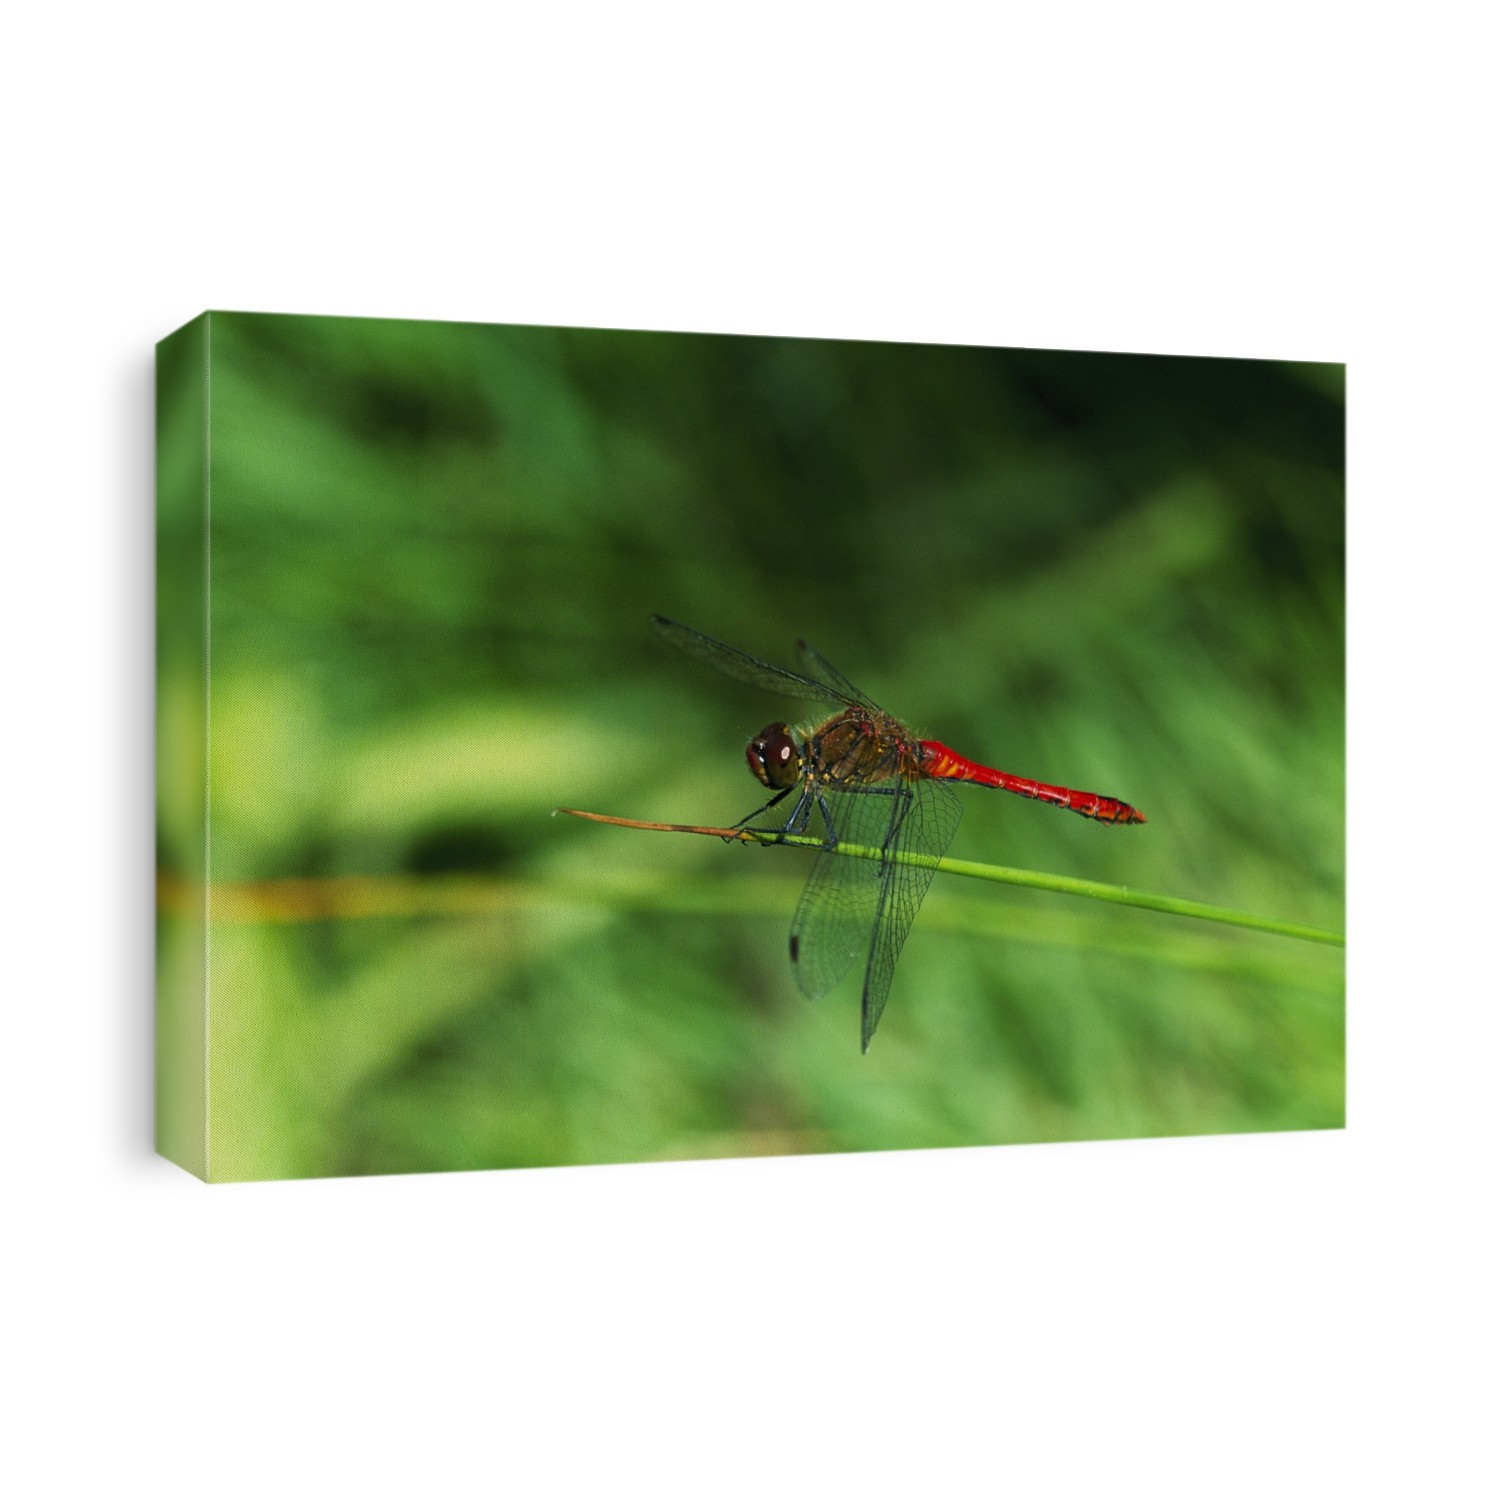 Male ruddy darter dragonfly (Sympetrum sanguineum).